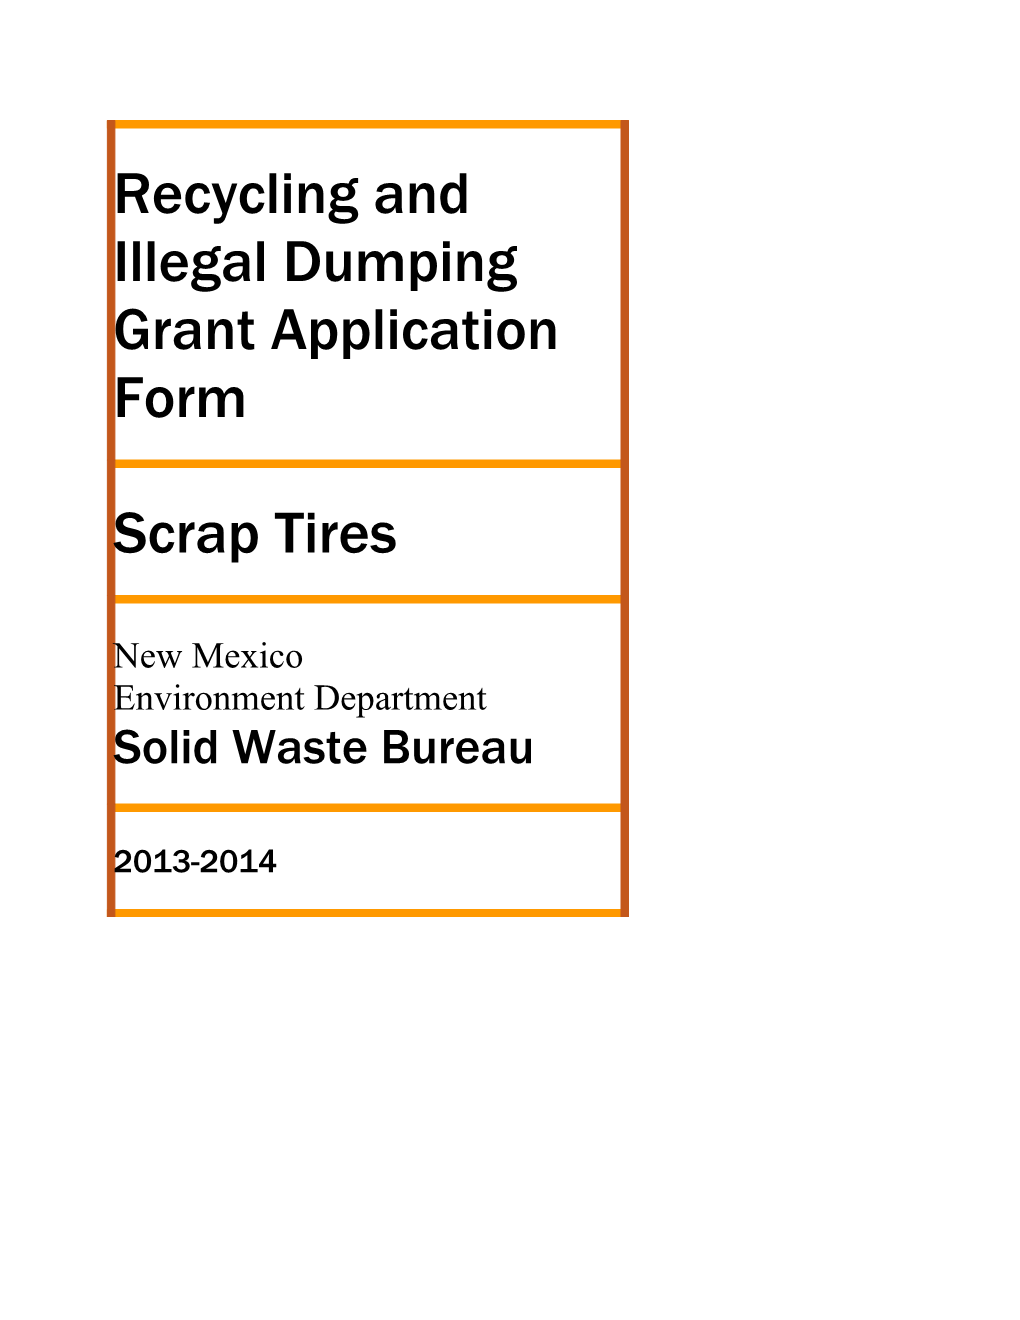 Scrap Tire Grant Application Form 4